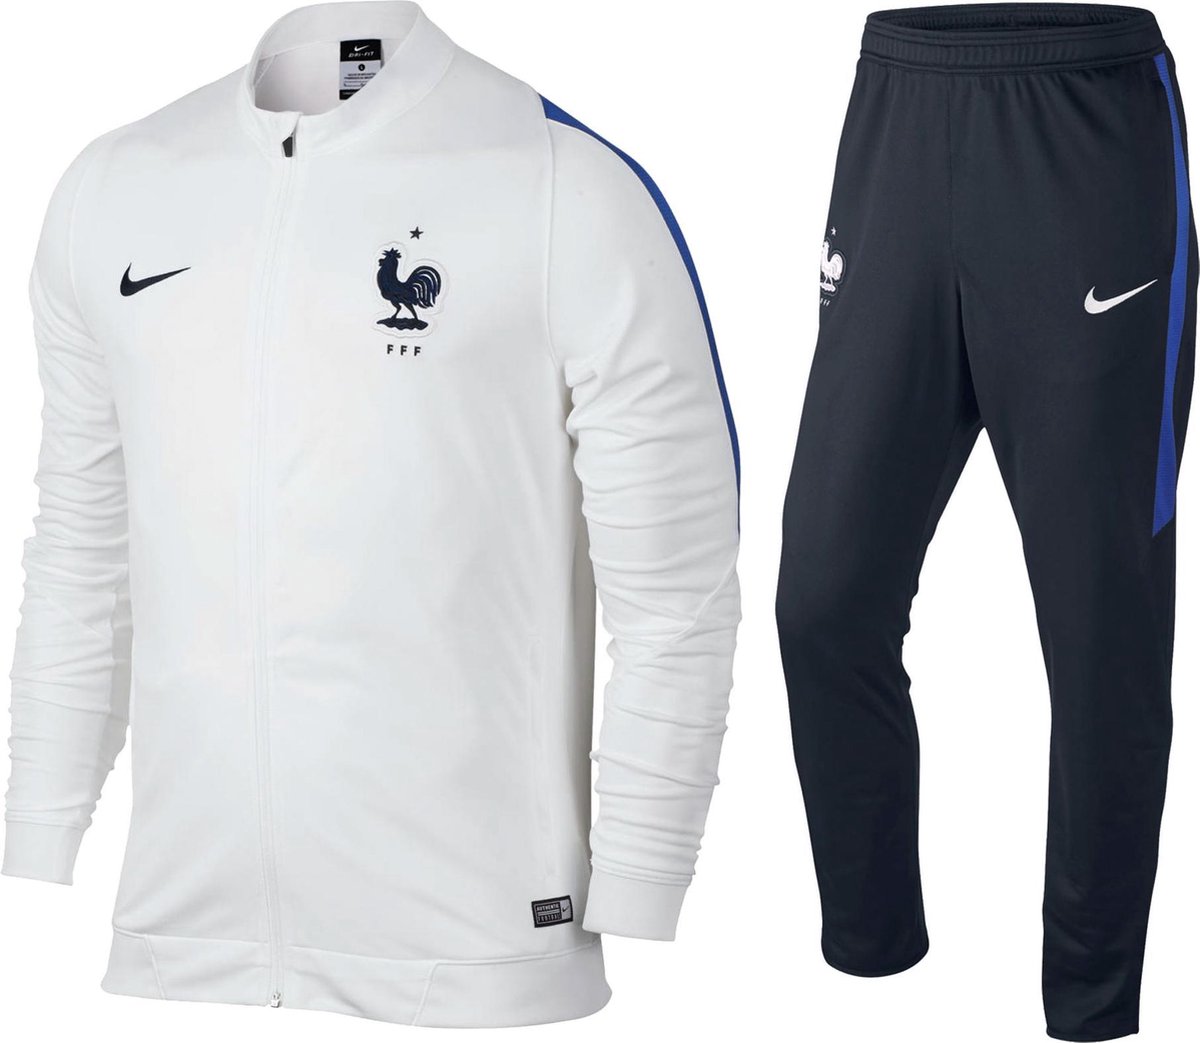 Dempsey Inactief Voorstad Nike Frankrijk Revolution Trainingspak - Maat L - Vrouwen - wit/blauw |  bol.com